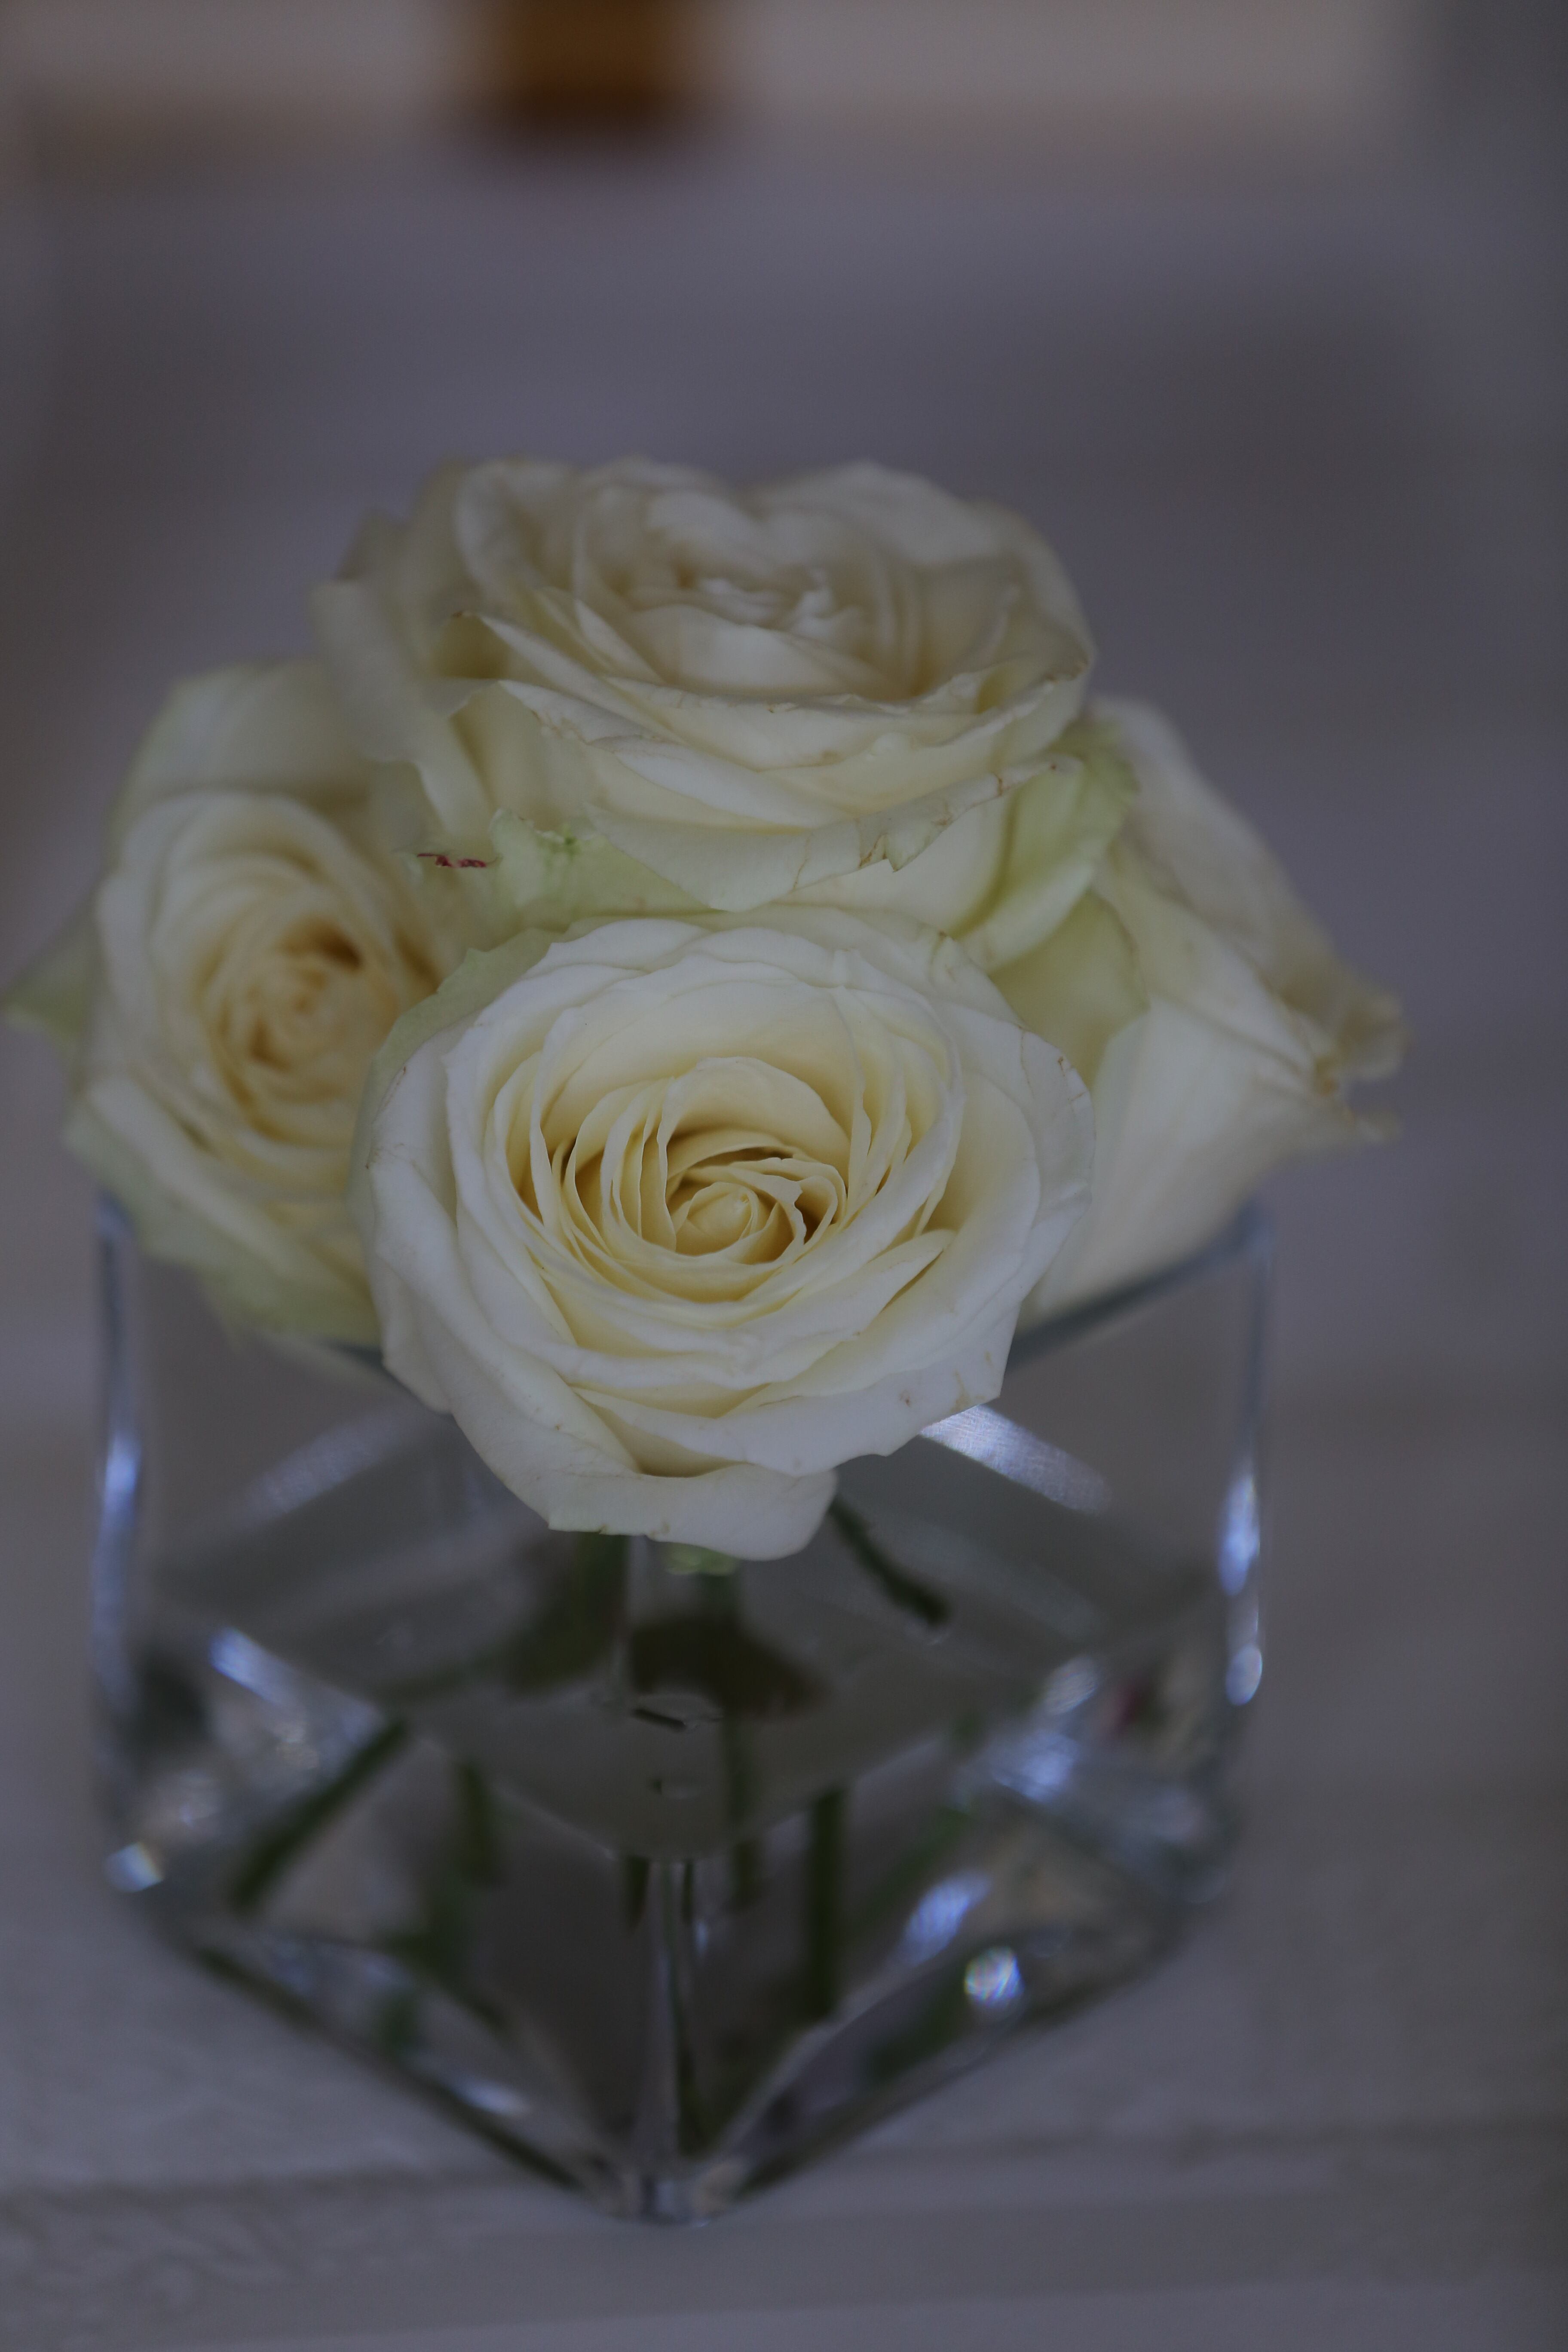 免费照片 白花 玫瑰 花瓶 优雅 玻璃 浪漫 花 上升 花瓣 束